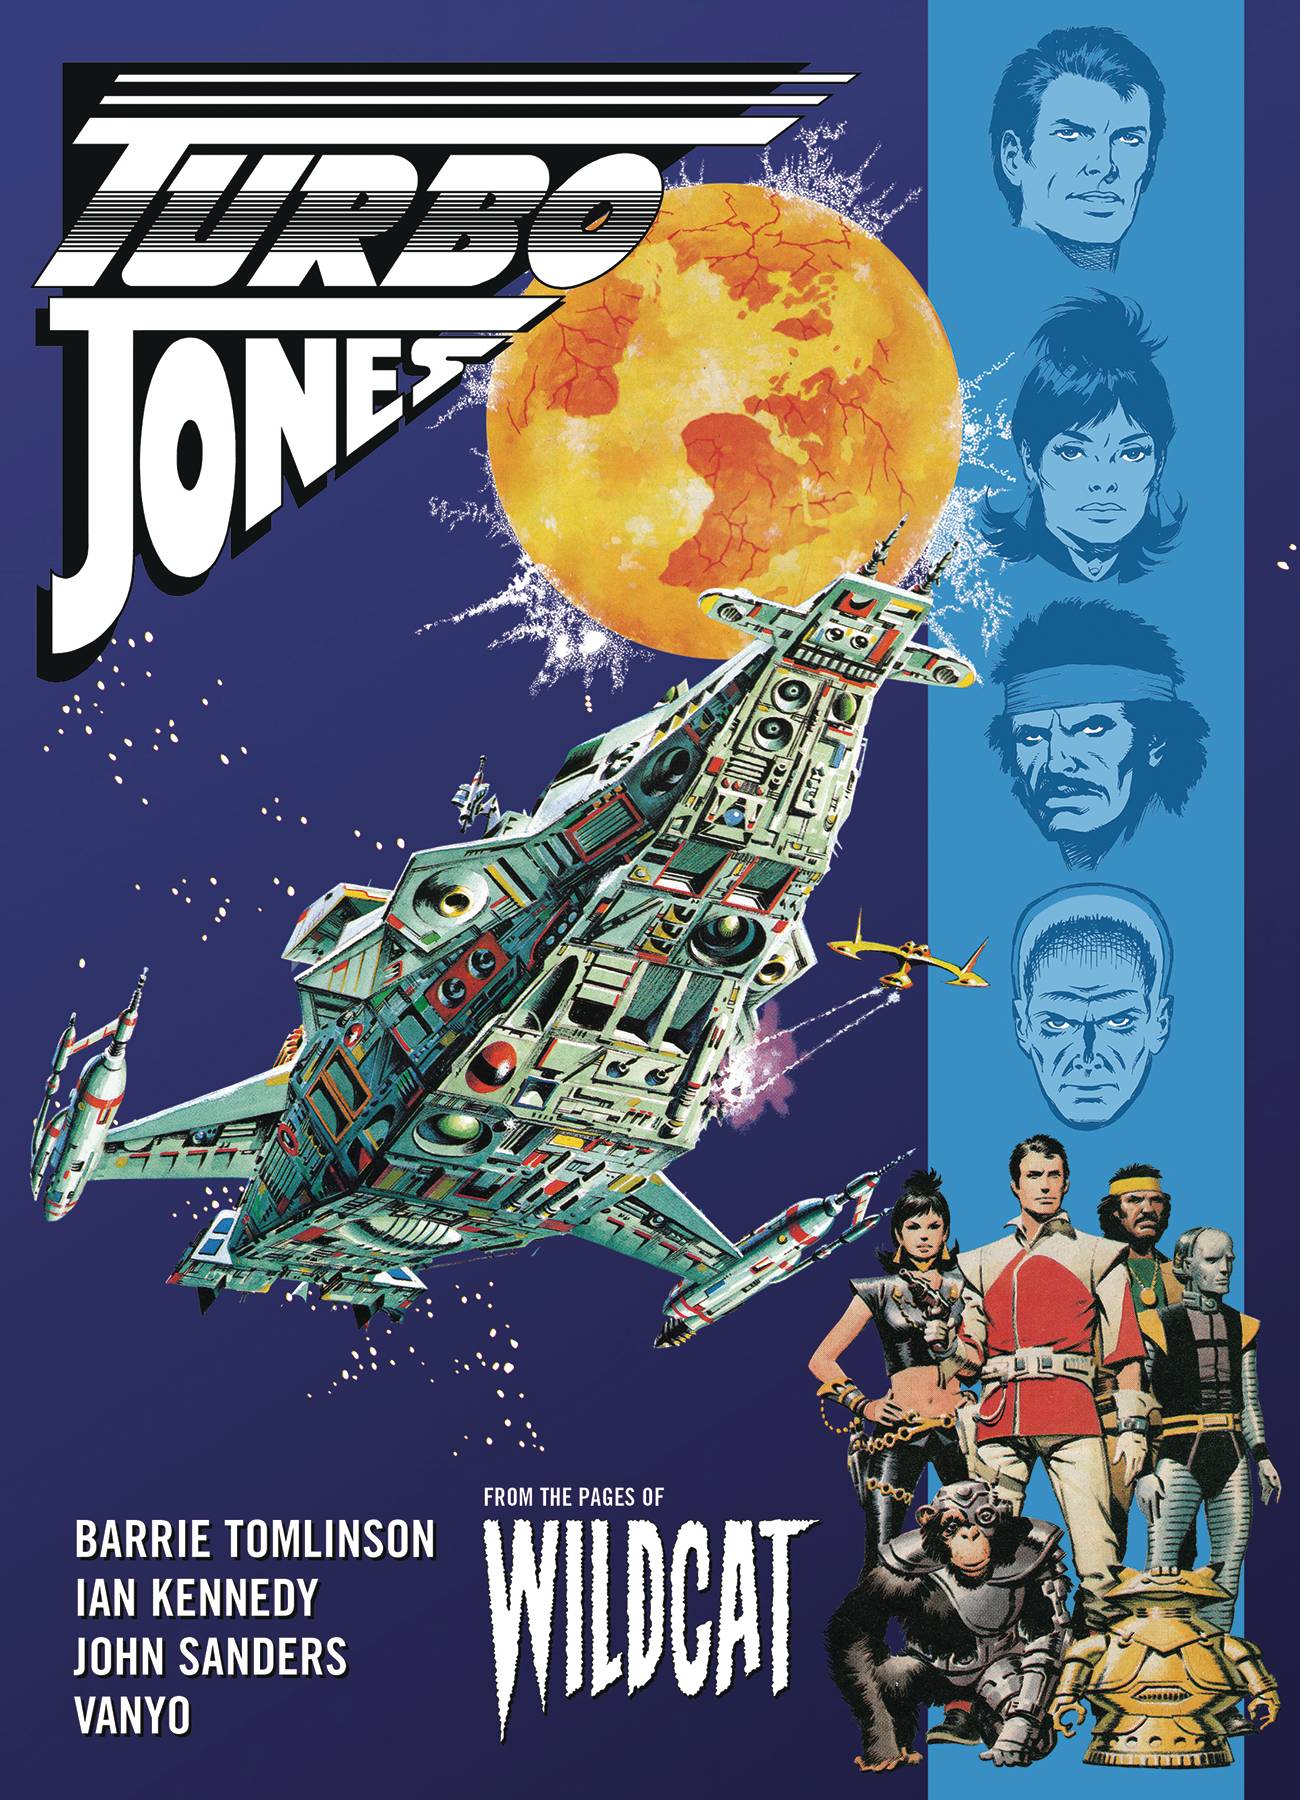 Wildcat Graphic Novel Volume 1 Turbo Jones